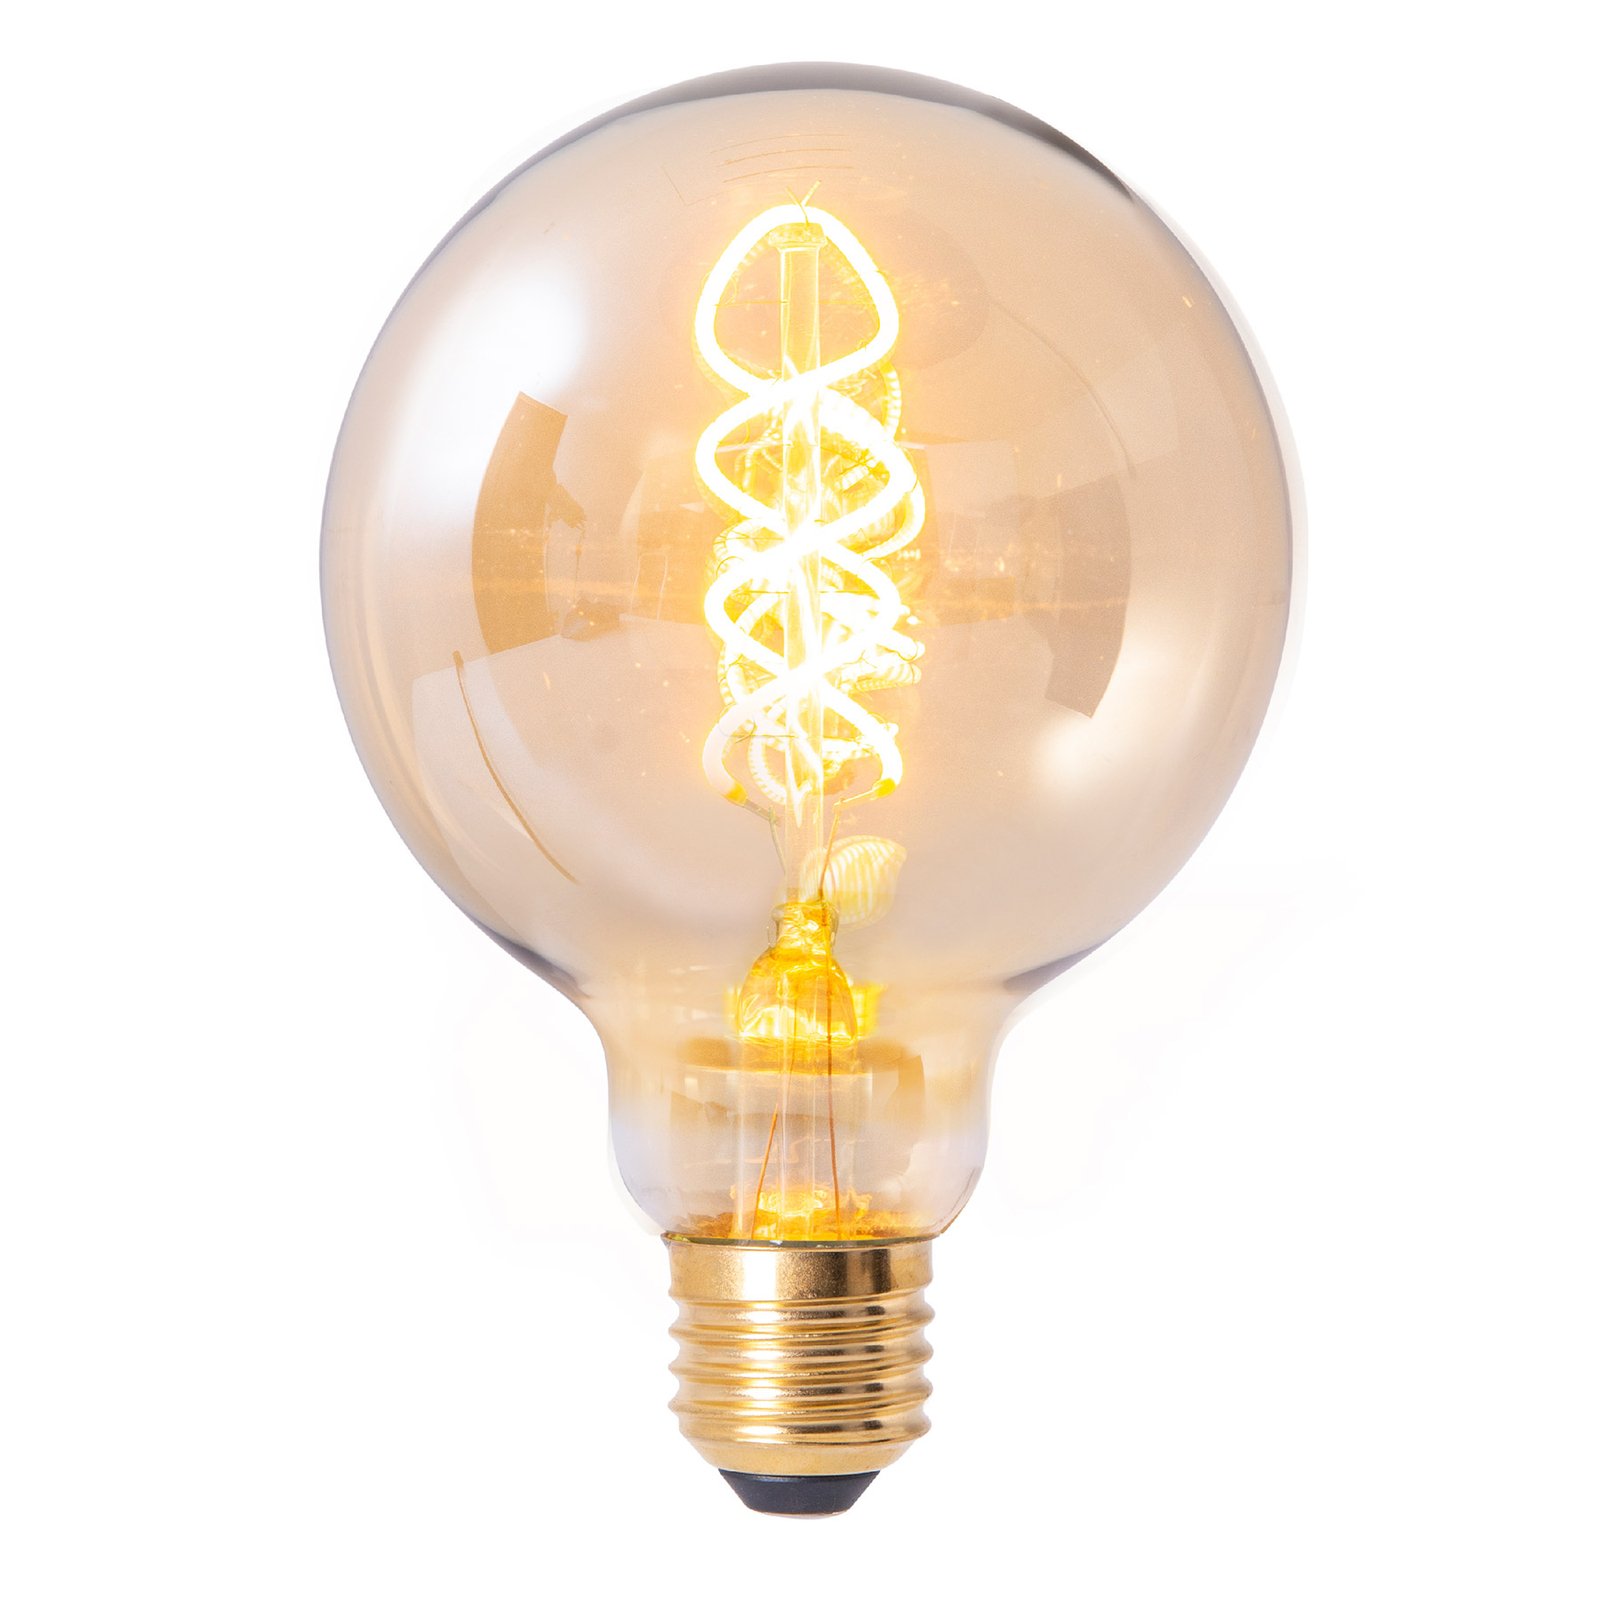 LED-Filamentlampe Globe E27 G95 4W 180lm 1800K 3er